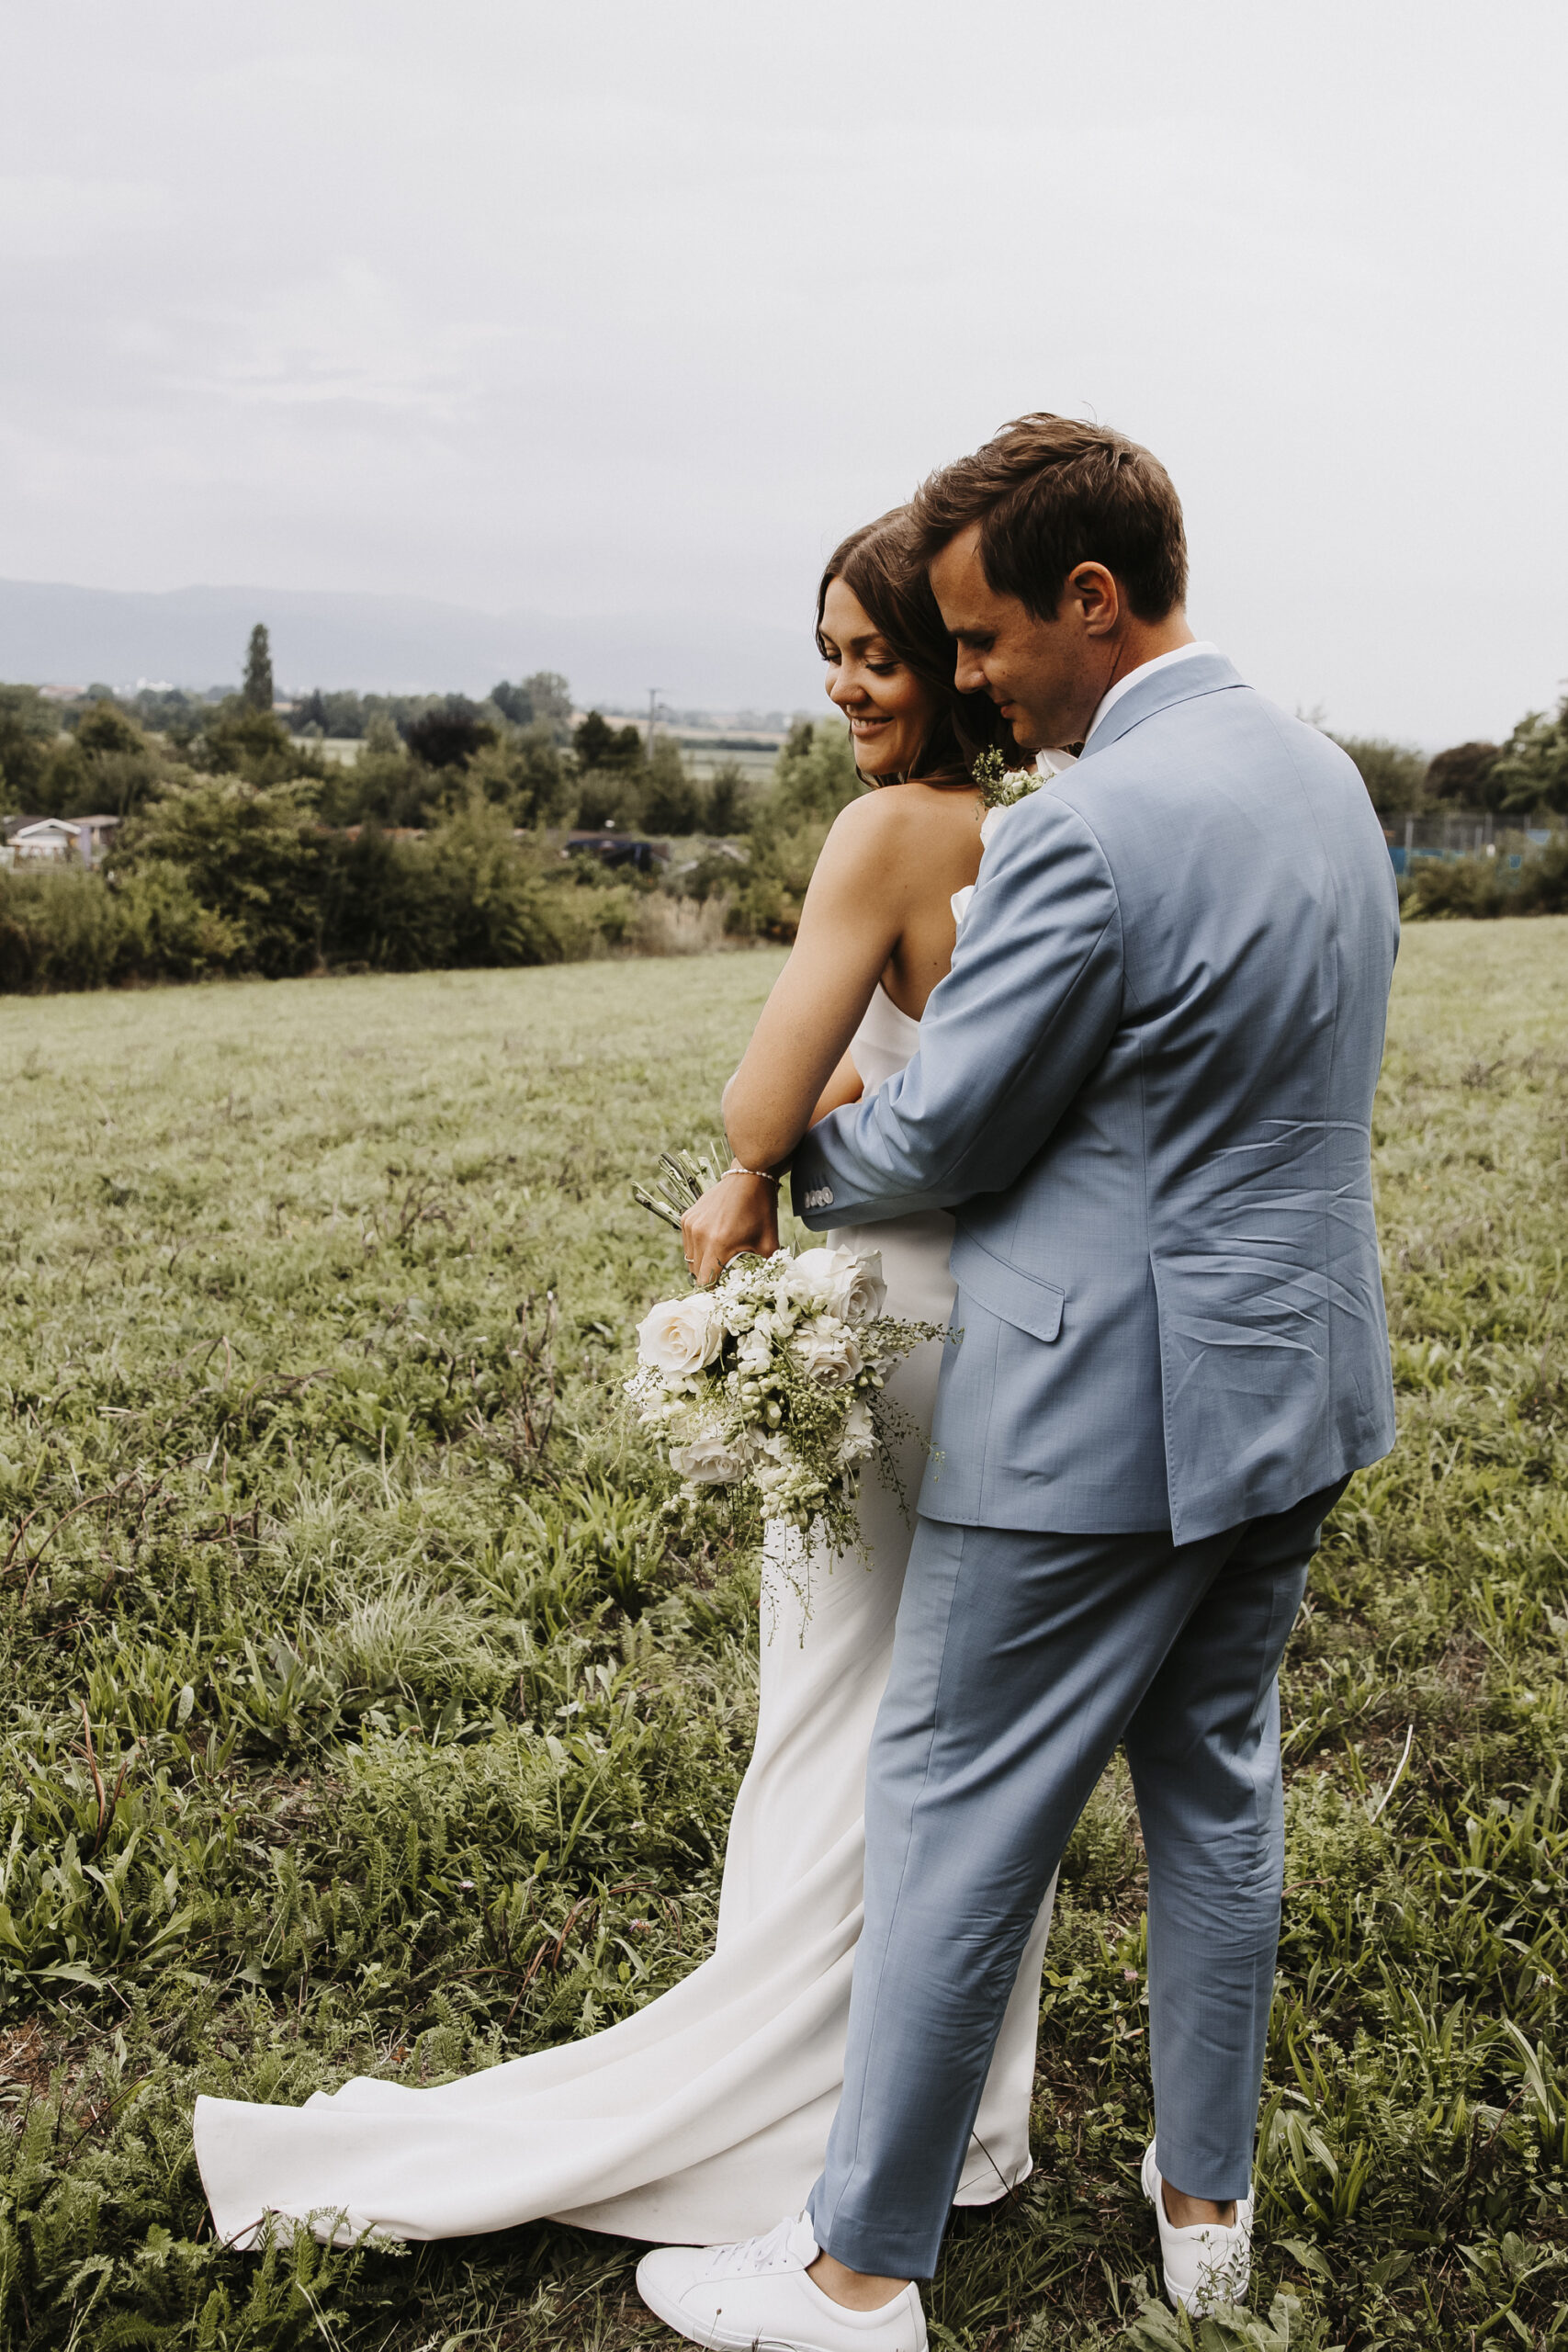 Brautpaarshooting - Ehemann und Ehefrau - Braut und Bräutigam tanzen zusammen, Küssen sich, schauen sich an, halten Hände, umarmen sich, zeigen ihre Outfits